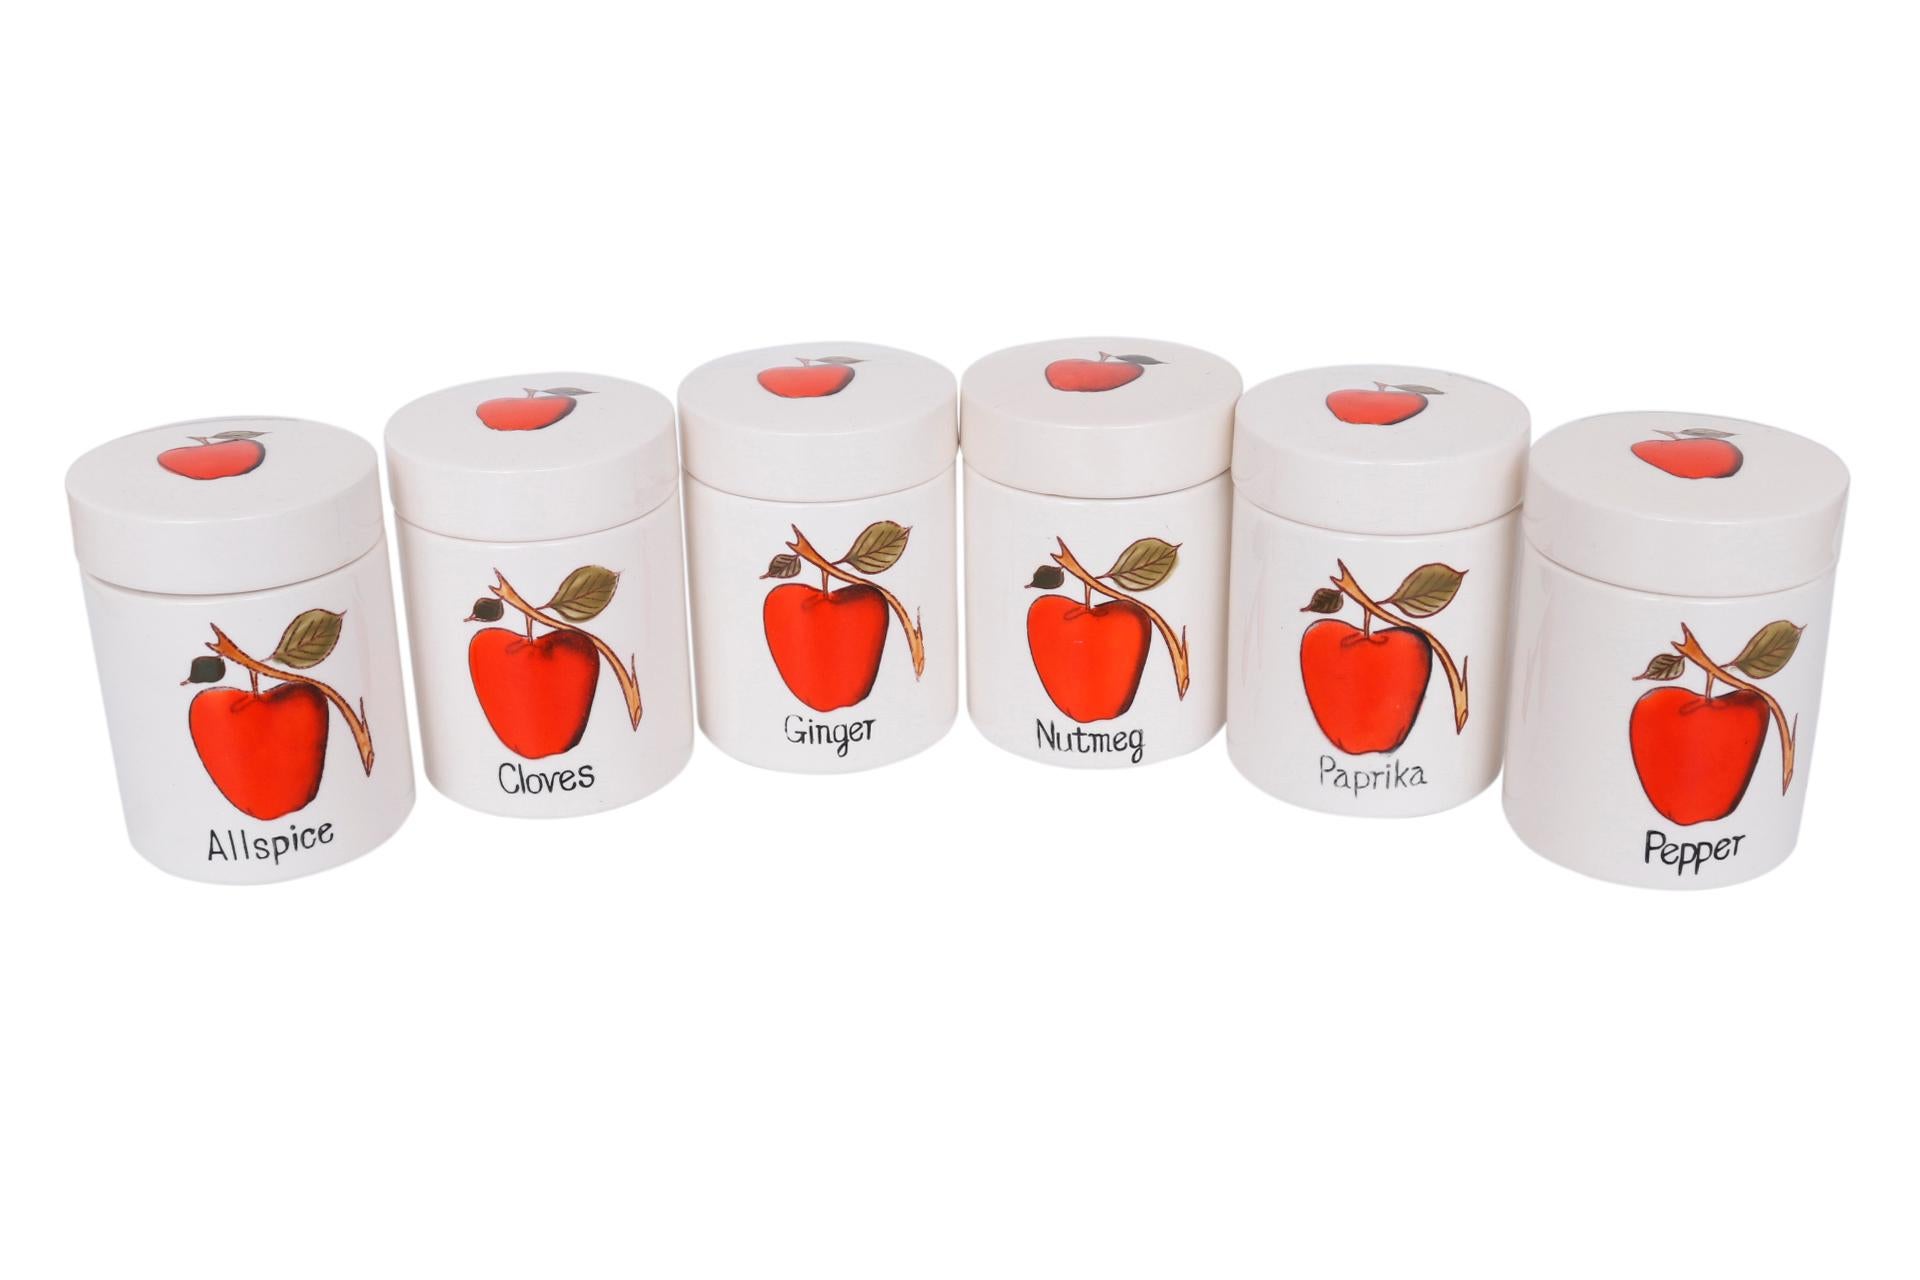 Un ensemble de six pots ou boîtes à épices en céramique. Peint à la main avec des pommes rouges à l'avant et des petites branches à l'arrière. Les couvercles sont également décorés de pommes rouges et sont doublés d'un bord en liège pour une